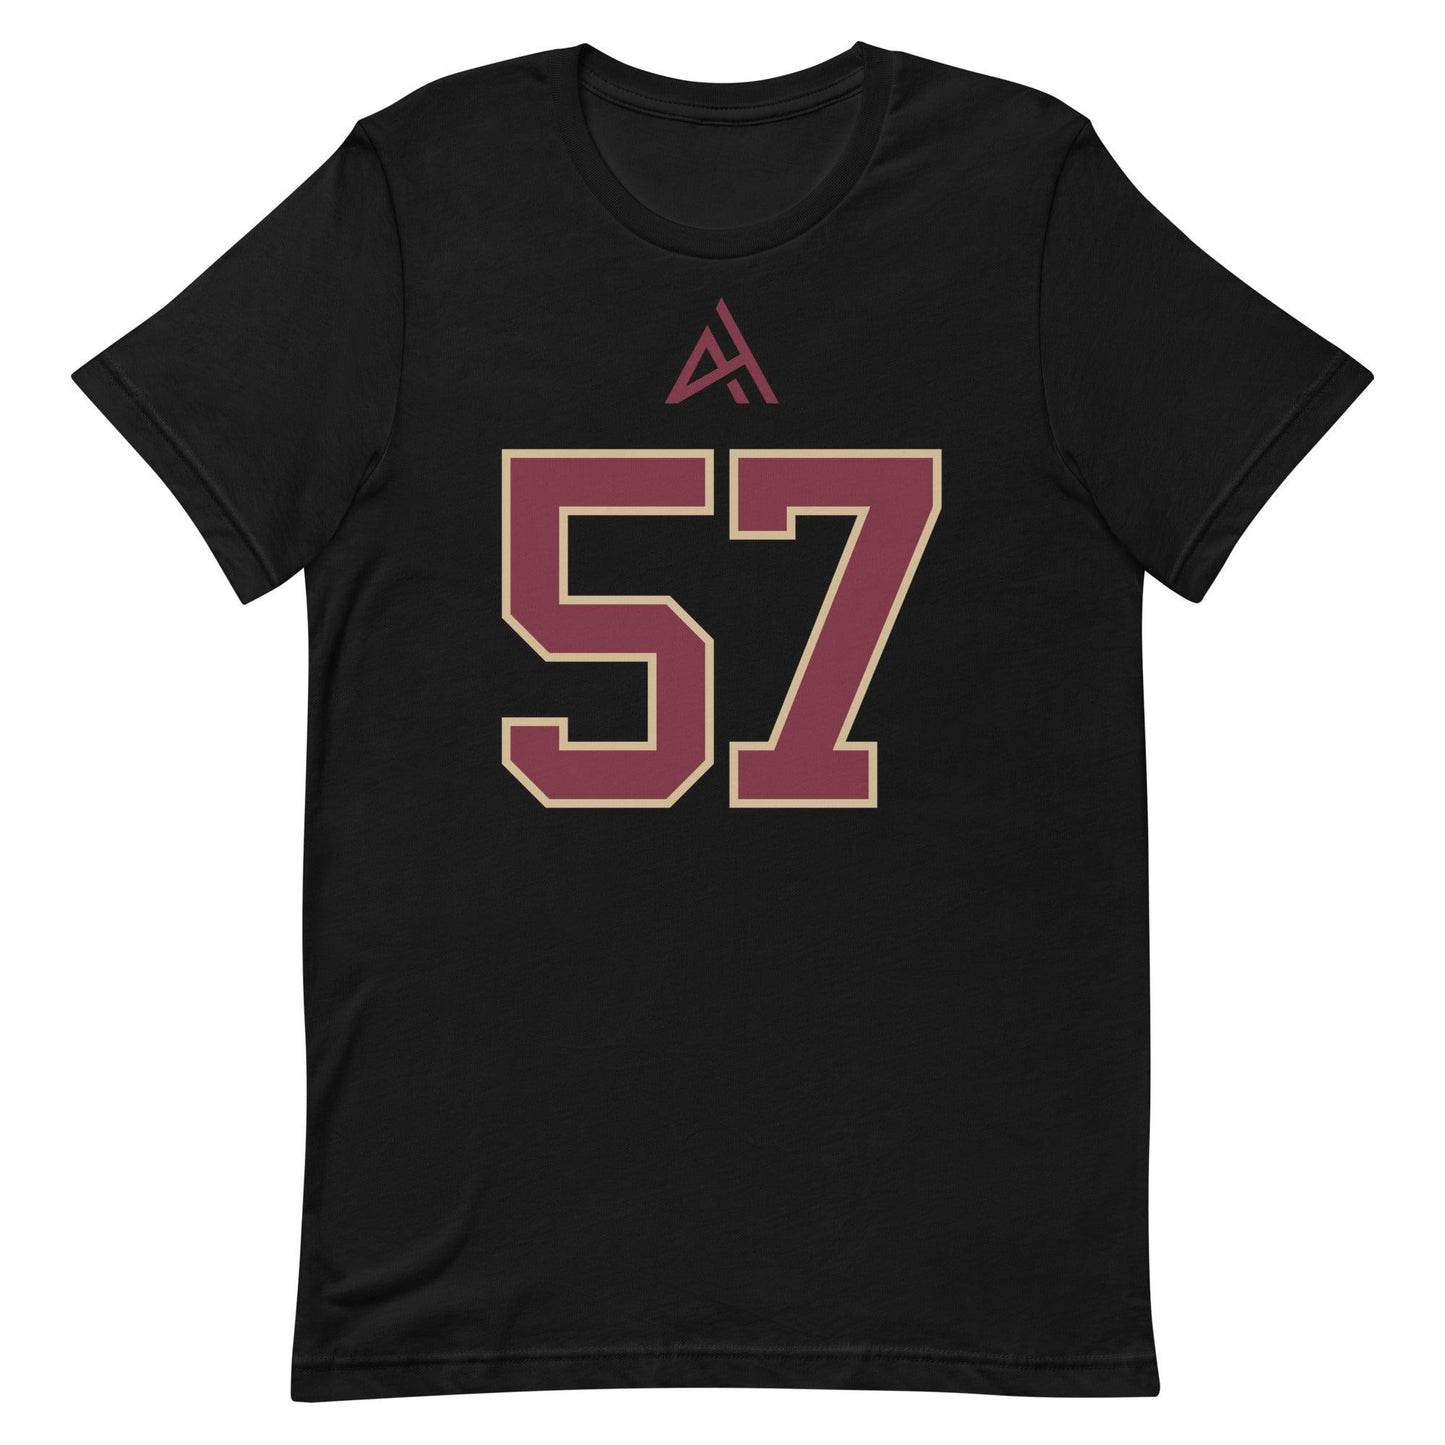 Aaron Hester "Jersey" t-shirt - Fan Arch